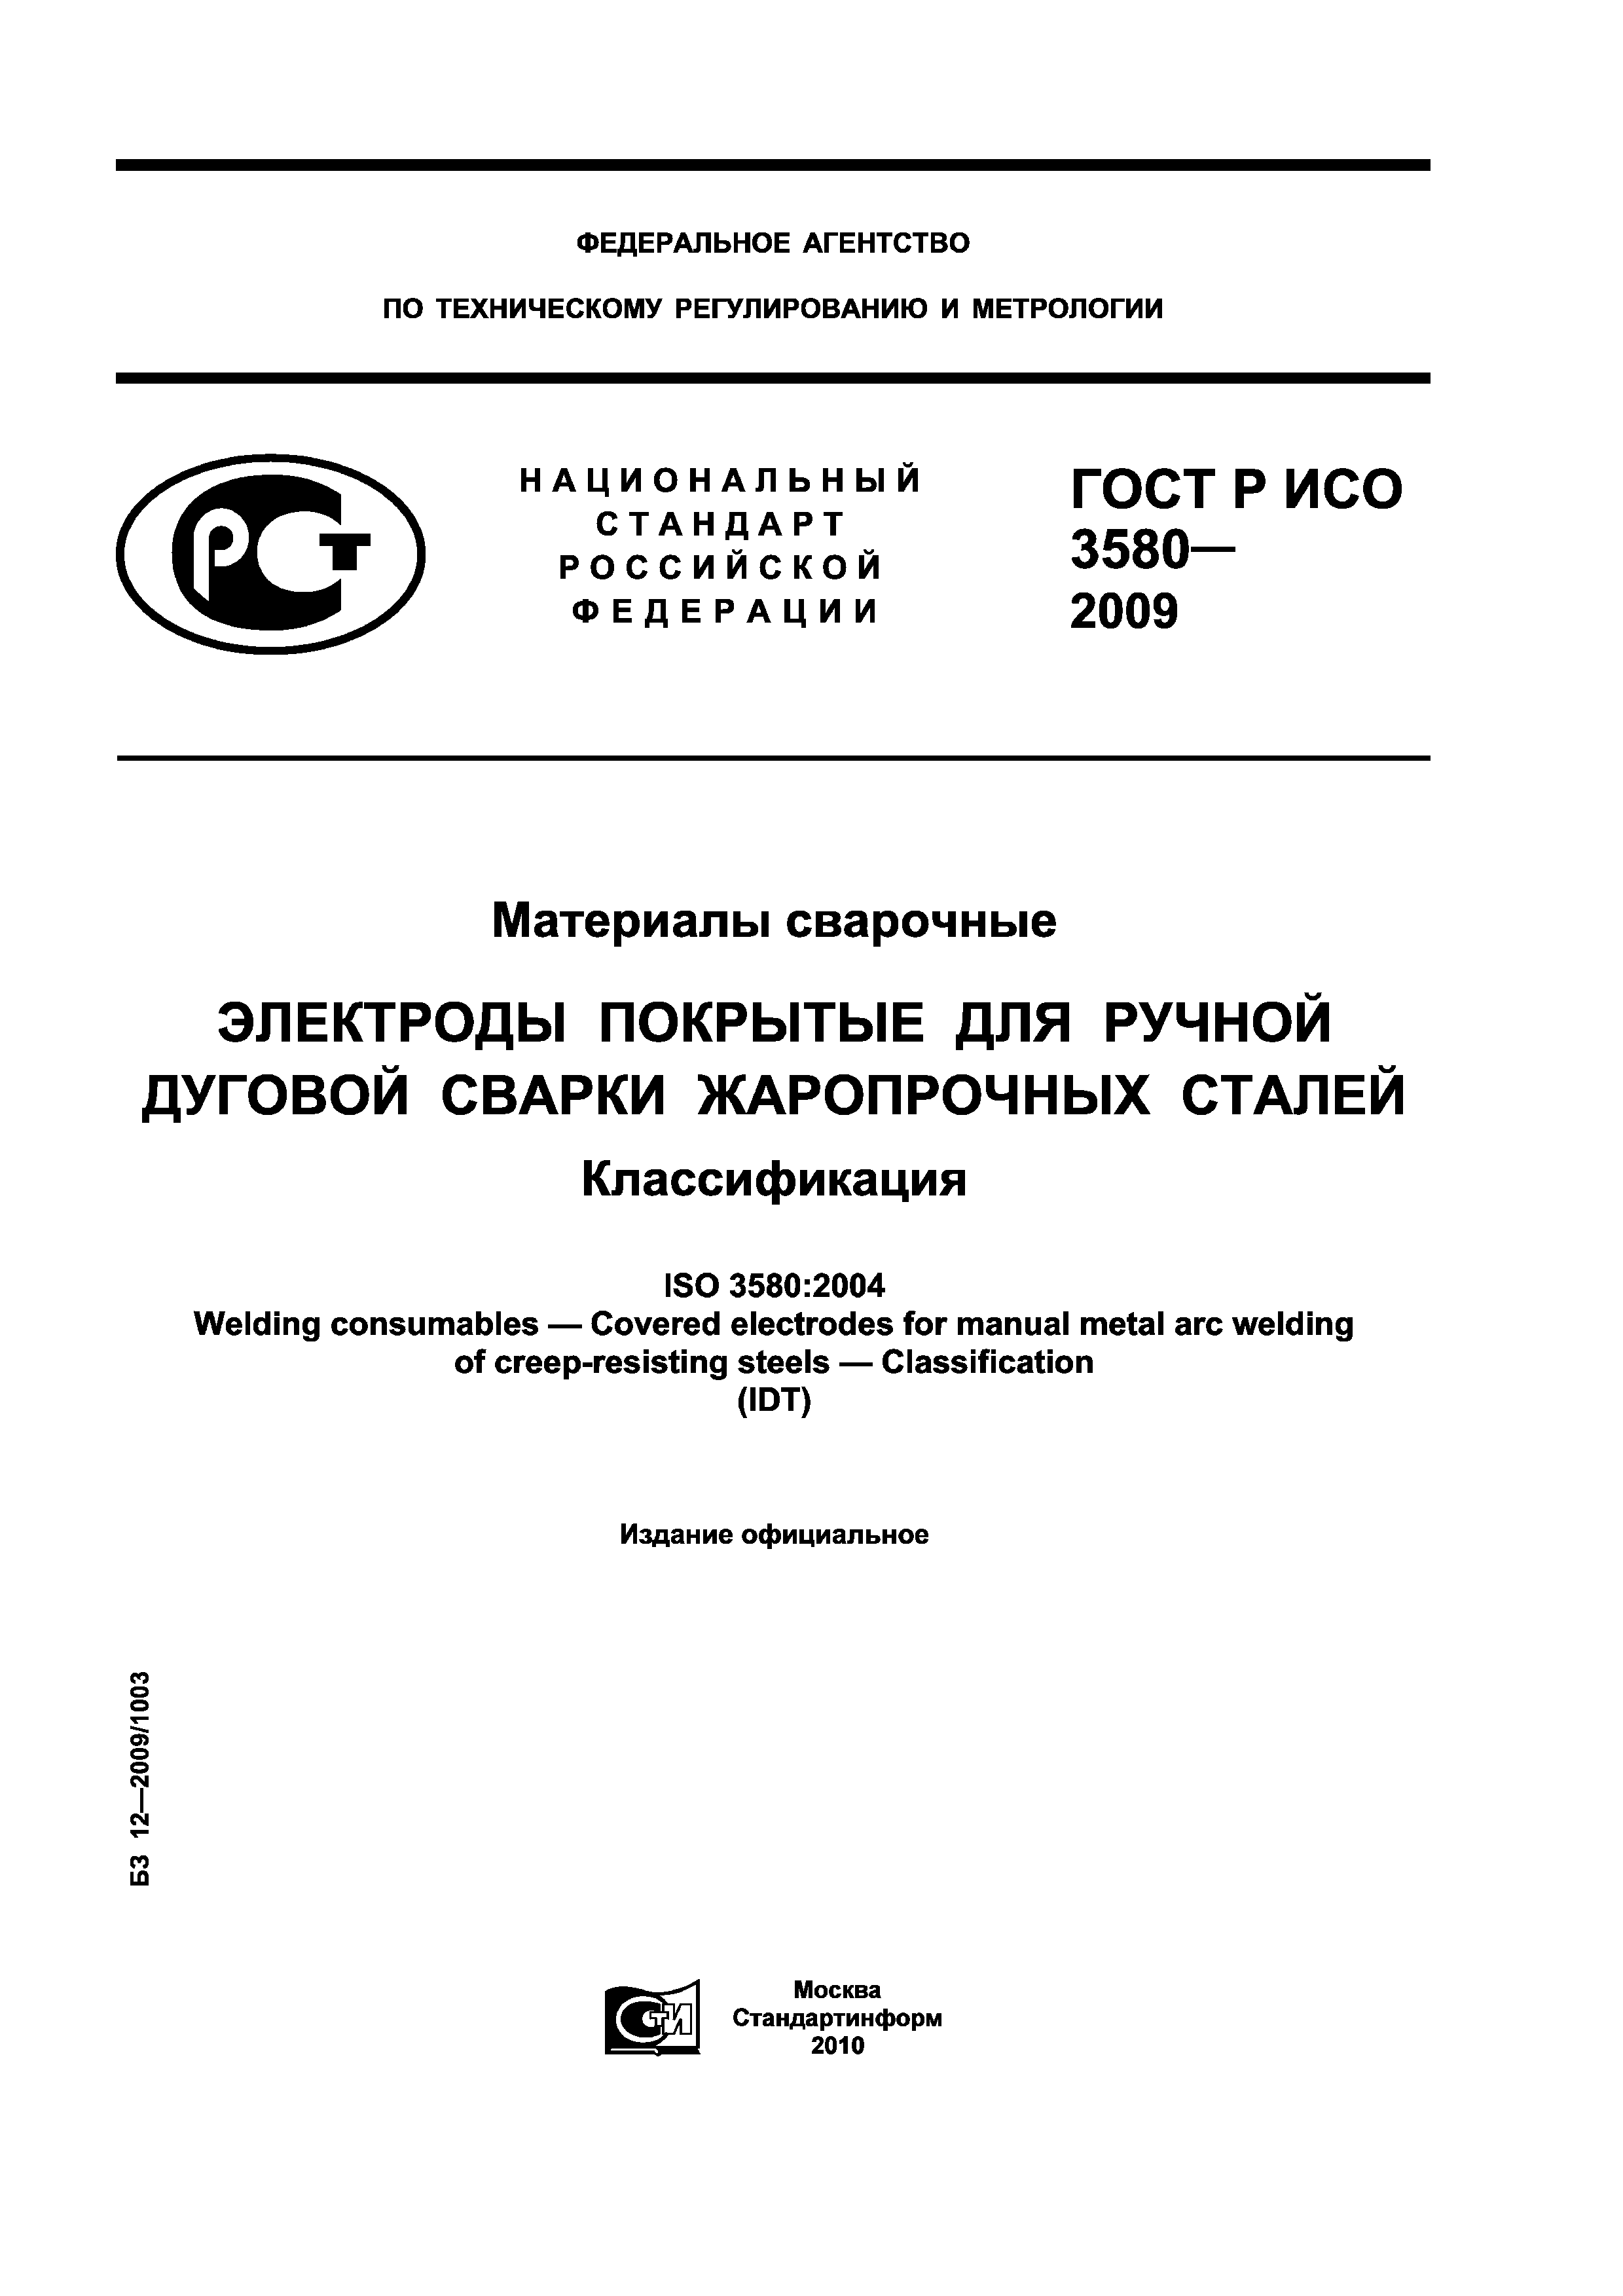 ГОСТ Р ИСО 3580-2009